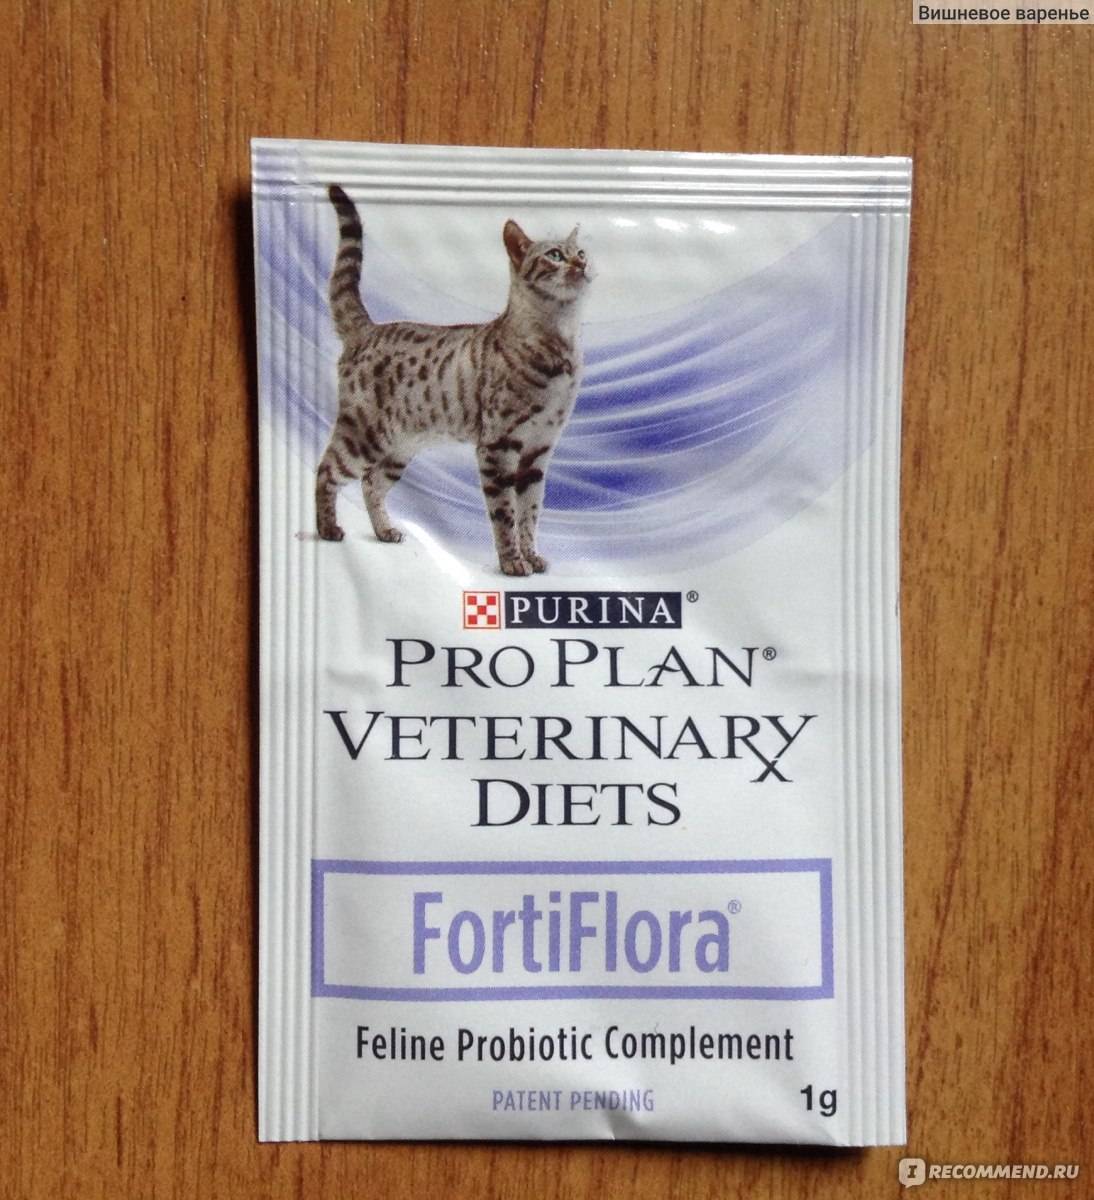 Пребиотик фортифлора purina fortiflora для кошек и собак инструкция по применению
пробиотика фортифлора purina fortiflora  в ветеринарии состав лекарства дозировка отзывы